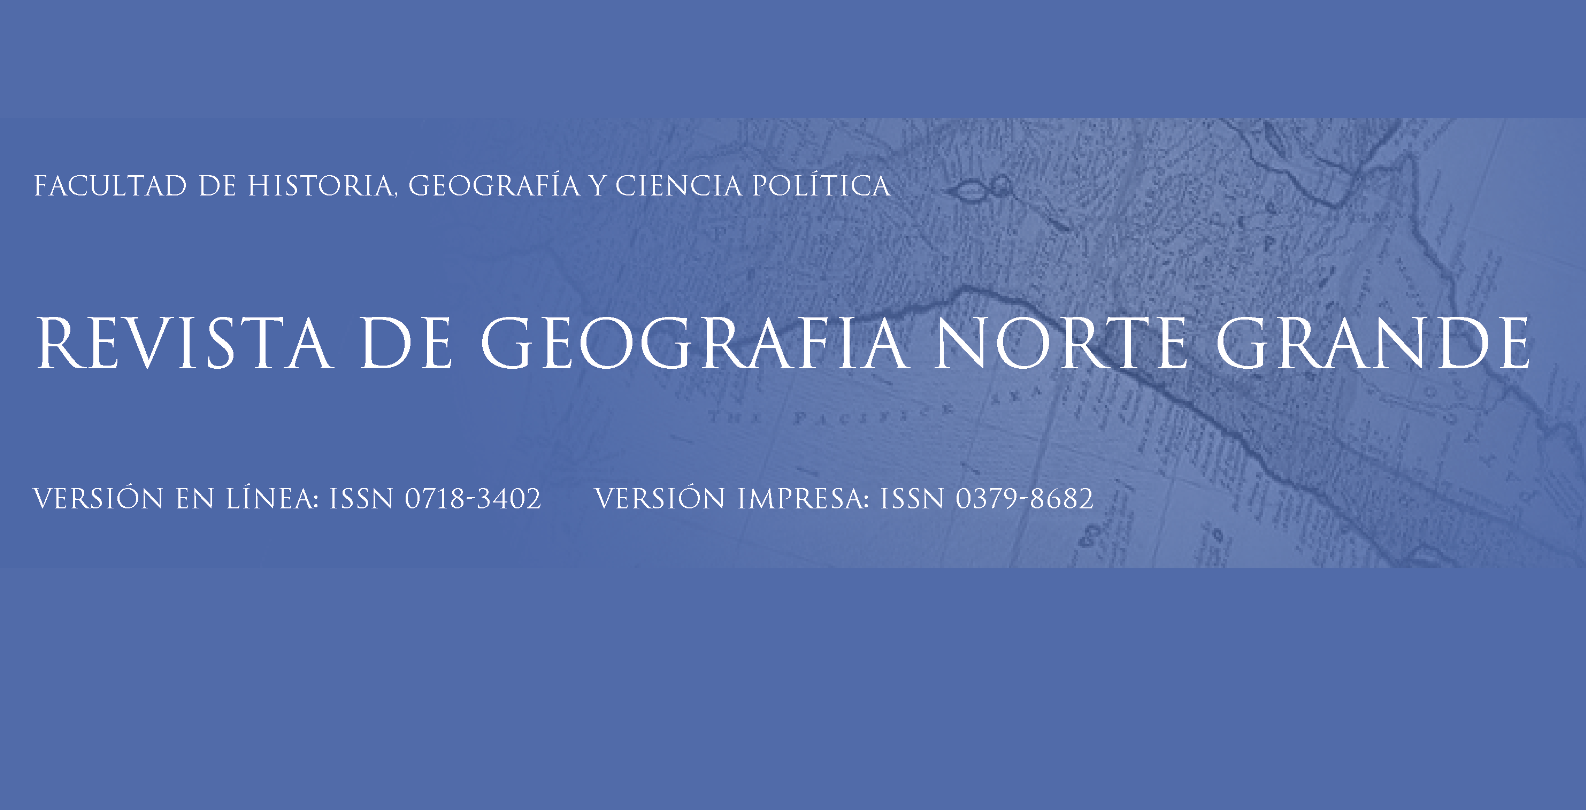 Disponible el número 80 de Revista de Geografía Norte Grande